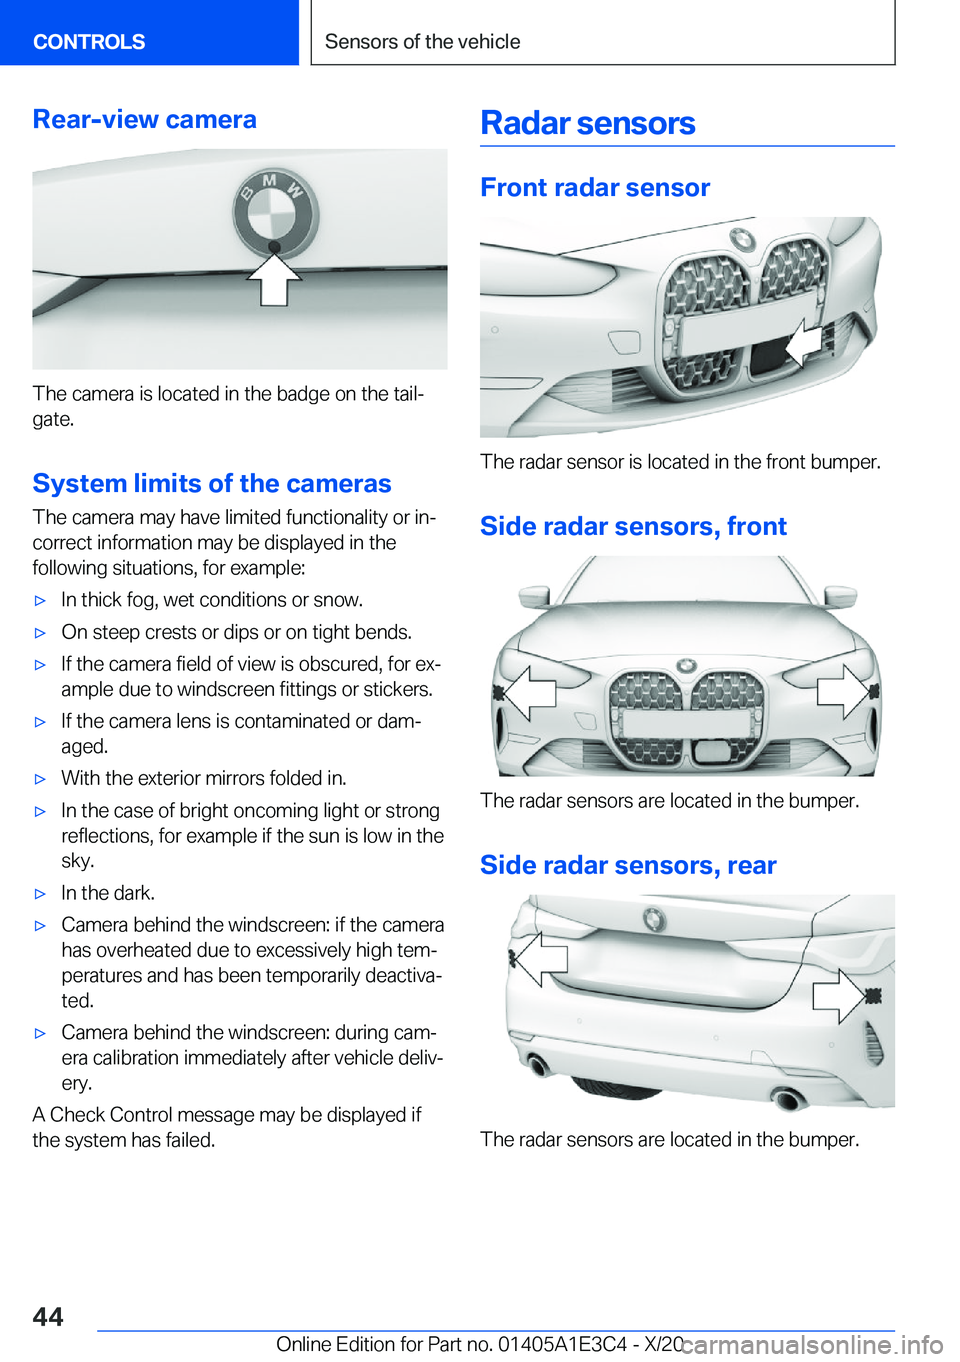 BMW M4 2021 Service Manual �R�e�a�r�-�v�i�e�w��c�a�m�e�r�a
�T�h�e��c�a�m�e�r�a��i�s��l�o�c�a�t�e�d��i�n��t�h�e��b�a�d�g�e��o�n��t�h�e��t�a�i�lj
�g�a�t�e�.
�S�y�s�t�e�m��l�i�m�i�t�s��o�f��t�h�e��c�a�m�e�r�a�s �T�h